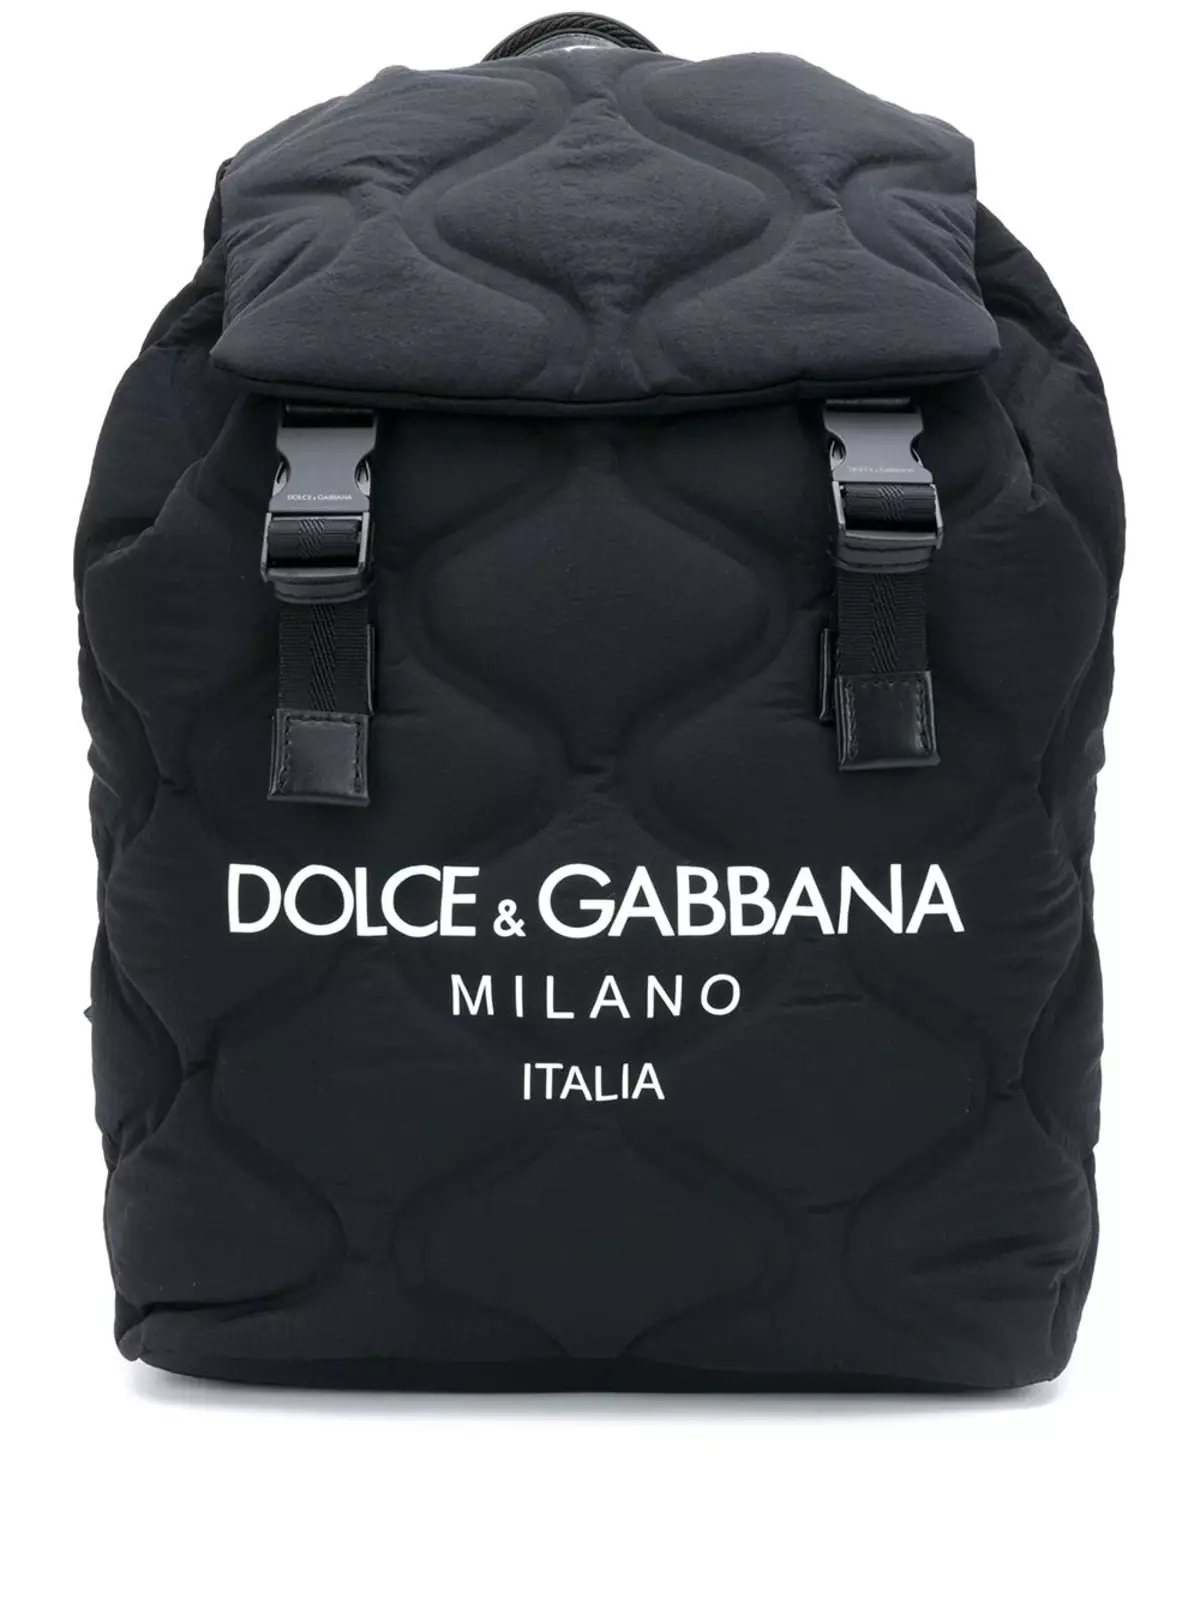 Рюкзаки Dolce & Gabbana: жіночі і чоловічі, чорні і червоні, шкіряні рюкзаки-сумки та інші моделі. Як відрізнити оригінал від копії? 2559_32